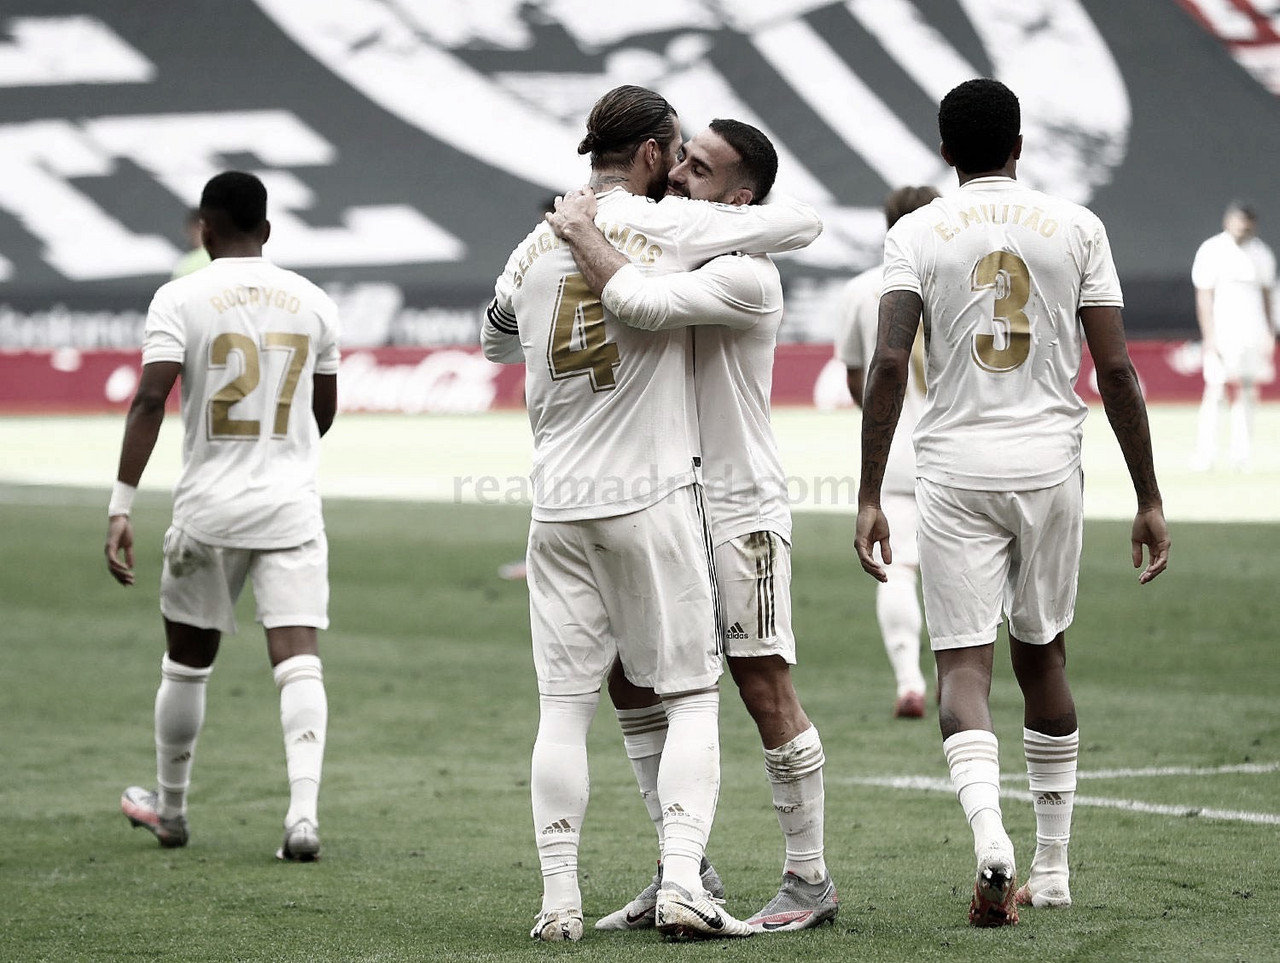 La contracrónica: el Real Madrid roza el título de Liga